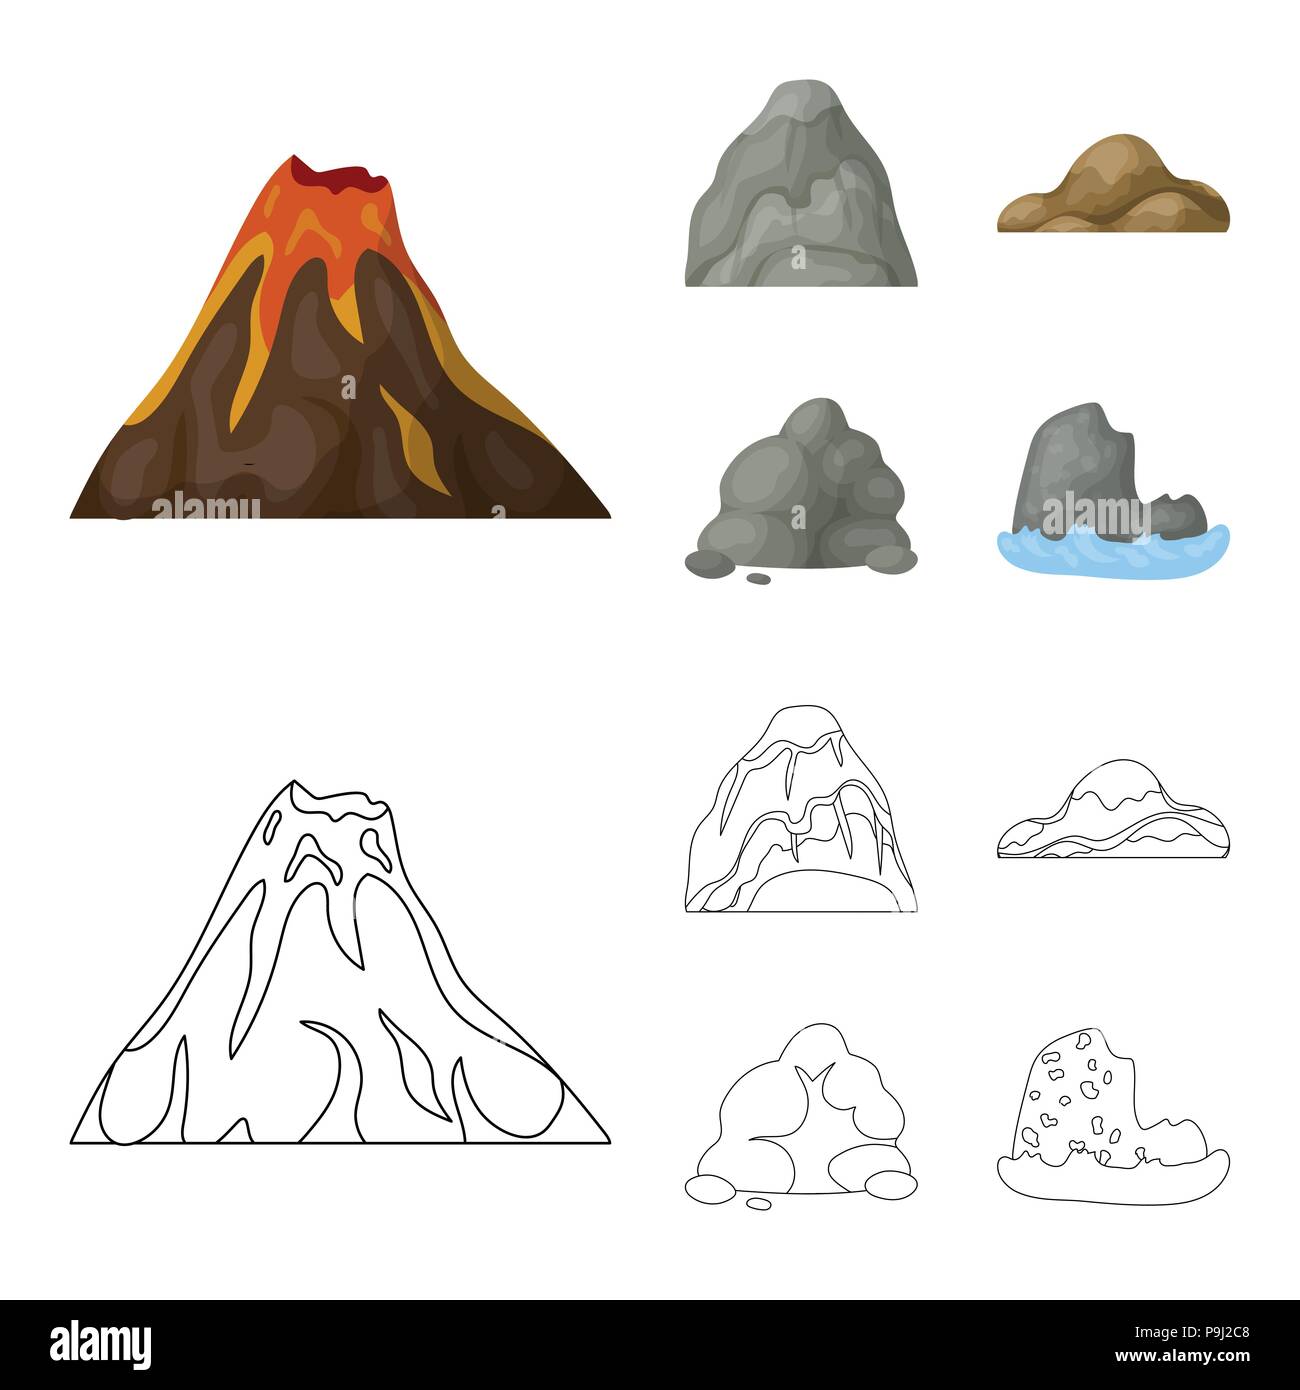 Geröll, eine abgerundete Berge, Felsen im Meer. Verschiedene berge Sammlung Icons im Cartoon, Outline style Vektor Symbol lieferbar Abbildung. Stock Vektor